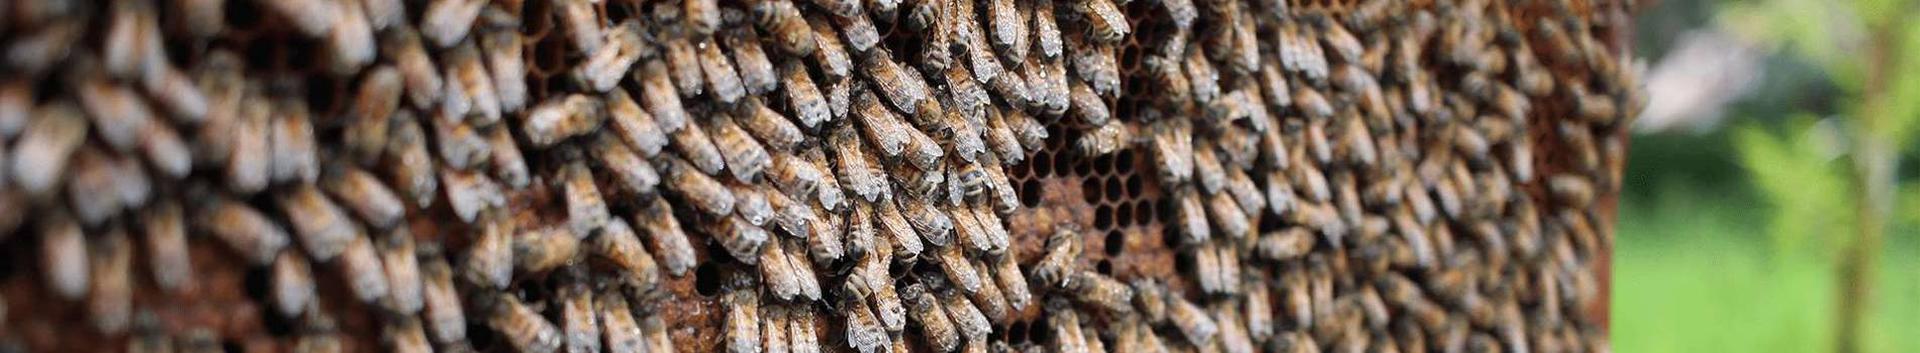 beekeeping, Beekeeping products